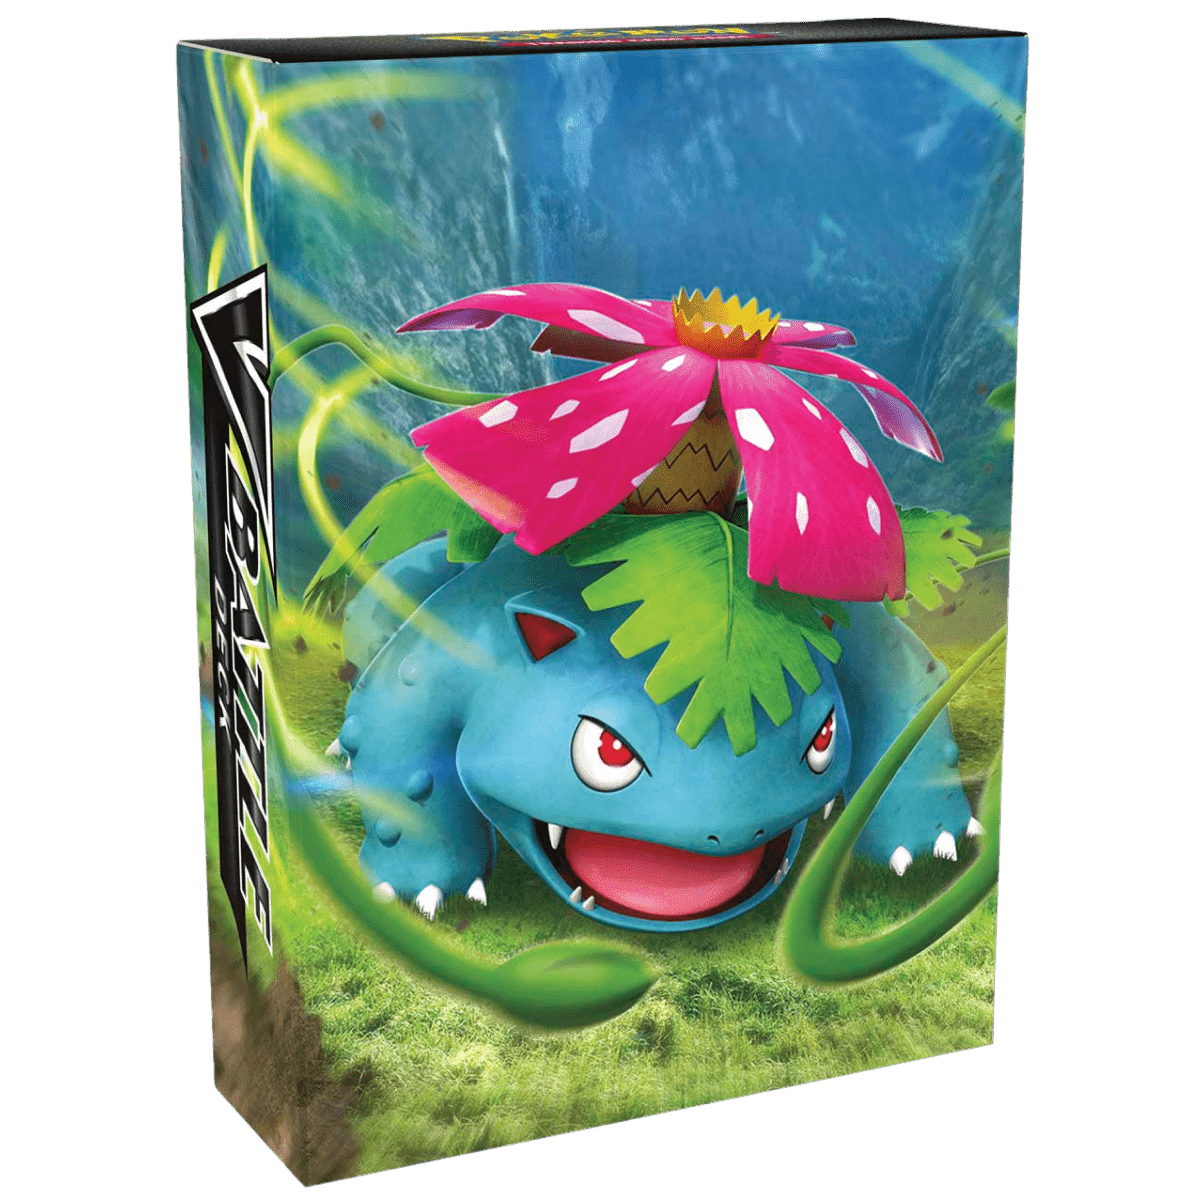 Pokemon TCG: V Battle Deck - Venusaur & Blastoise - The Card Vault